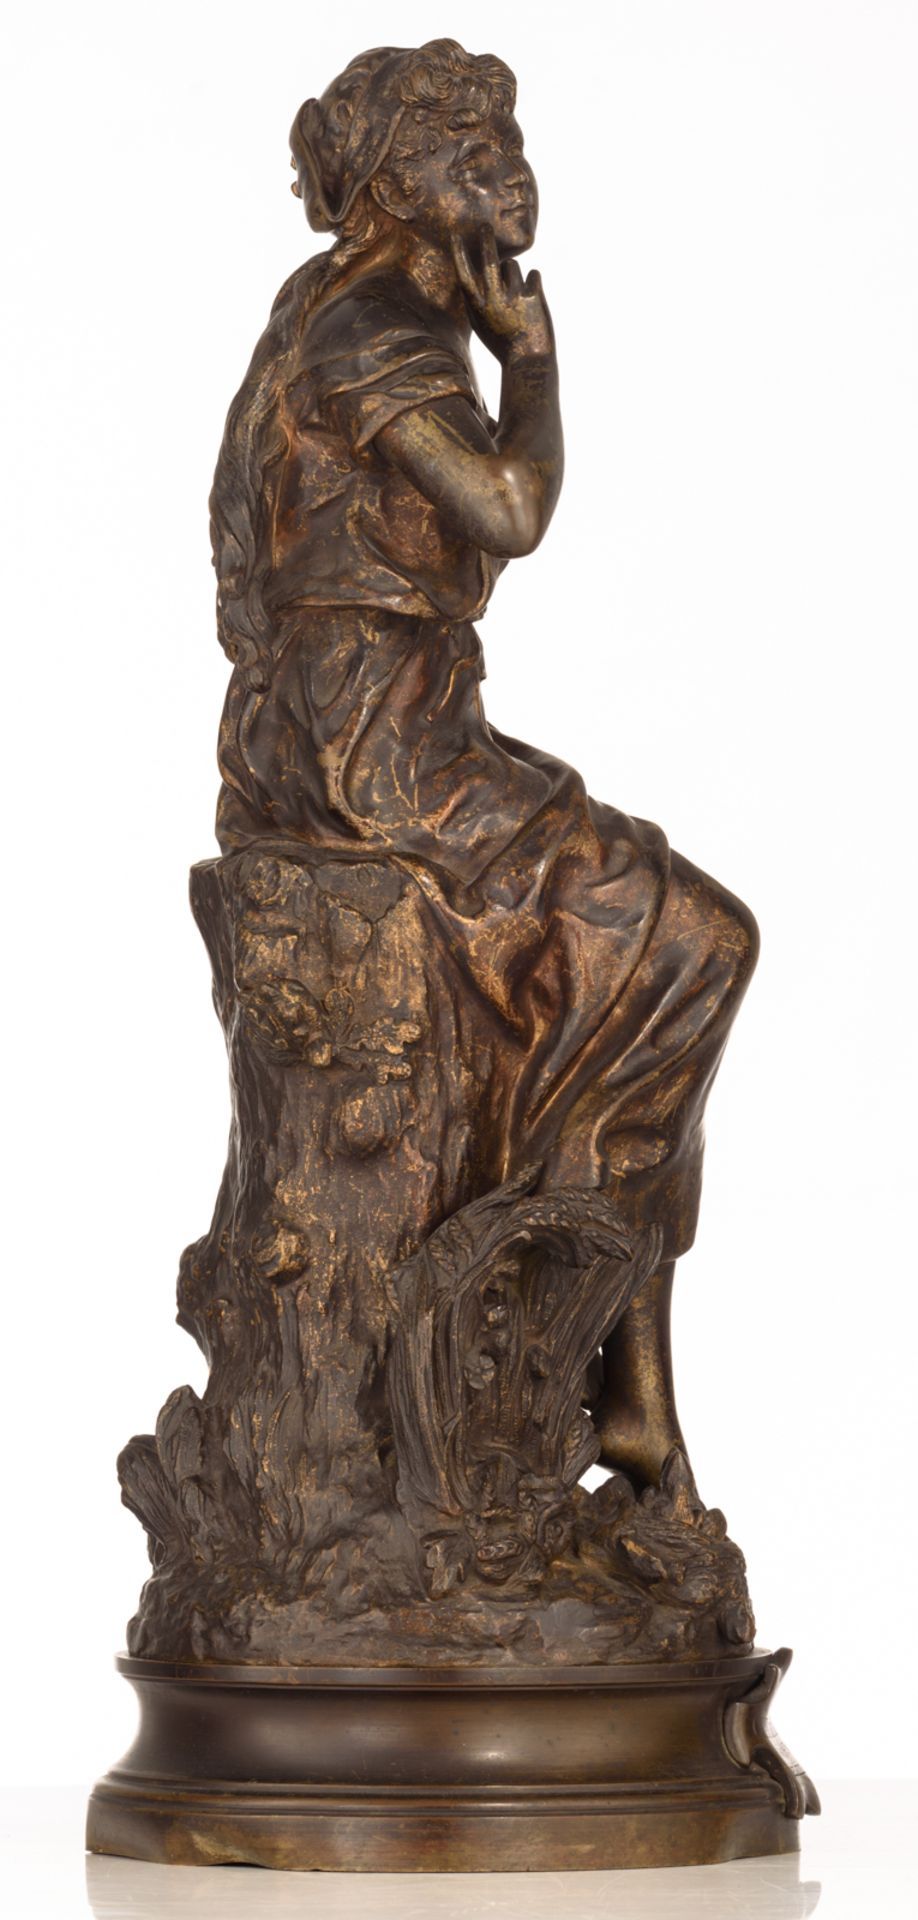 Moreau H., 'Chant de l'alouette', dated '1888 - 1913', patinated bronze, H 59 cm - Image 4 of 8